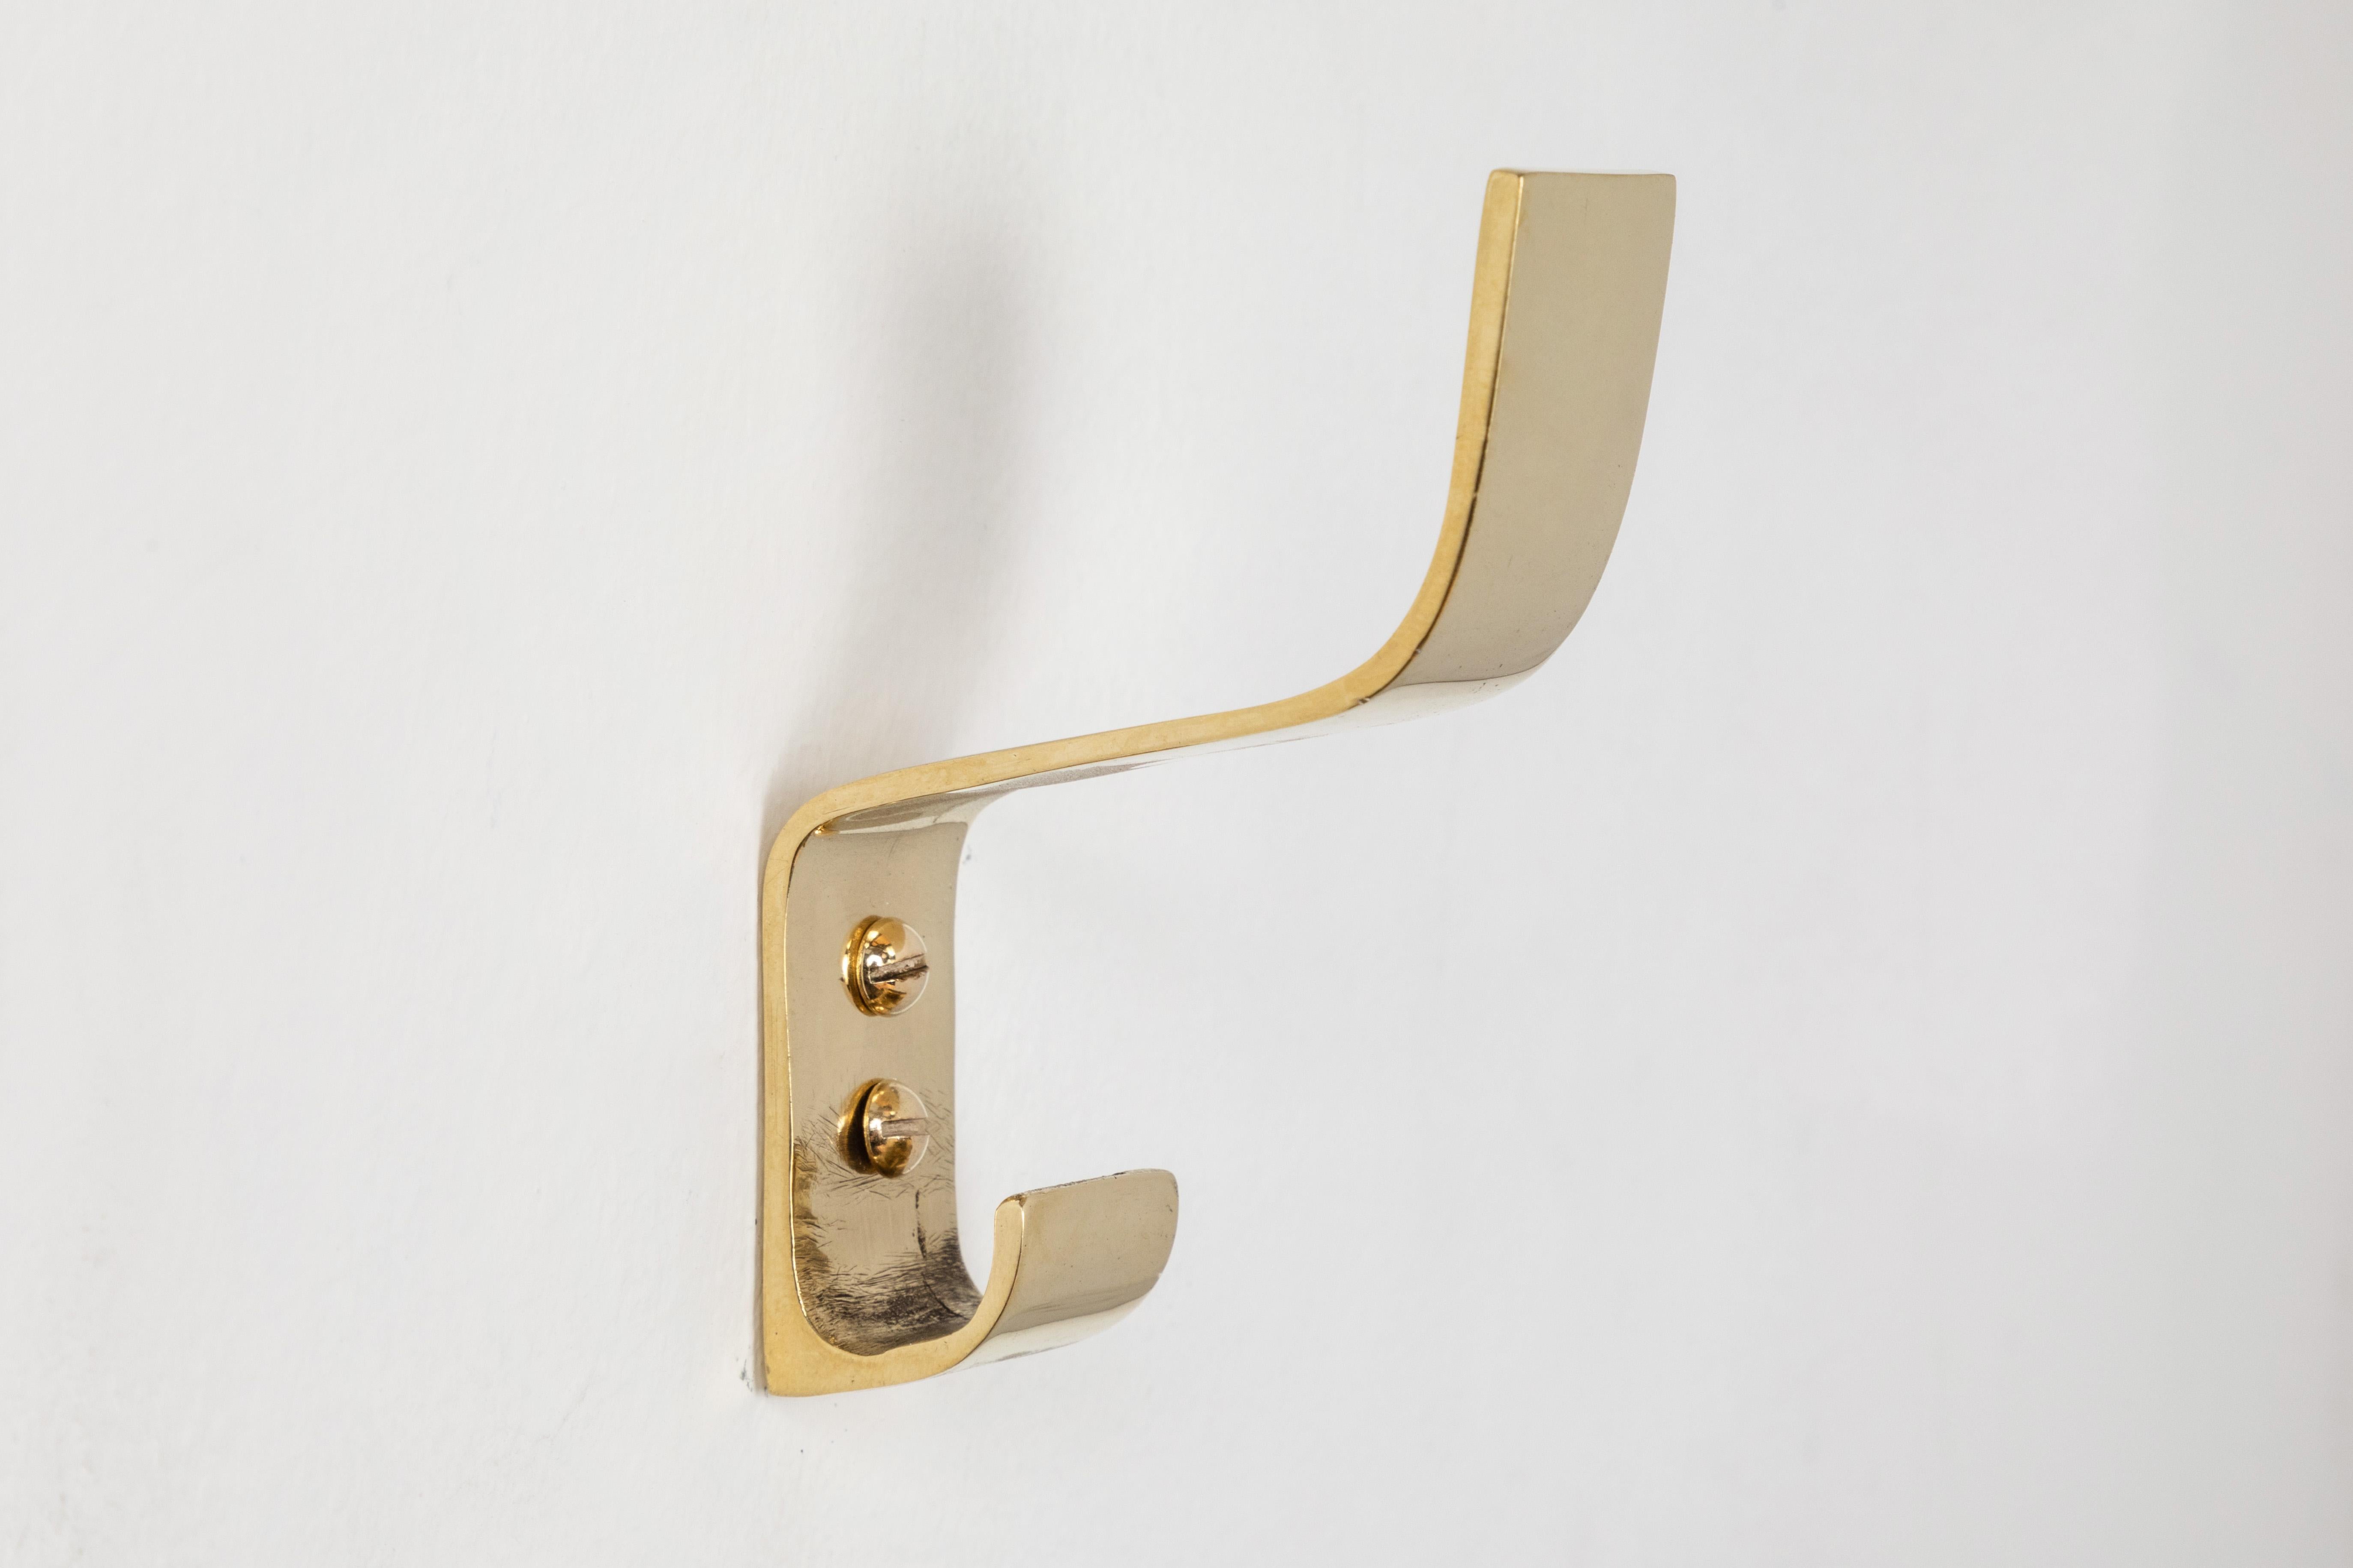 Carl Auböck Modell #5261 Messinghaken. Dieser vielseitige und minimalistische Wiener Haken wurde in den 1950er Jahren von der Werkstätte Carl Auböck, Österreich, aus poliertem Messing hergestellt. 

Hergestellt von Carl Auböck IV in der originalen